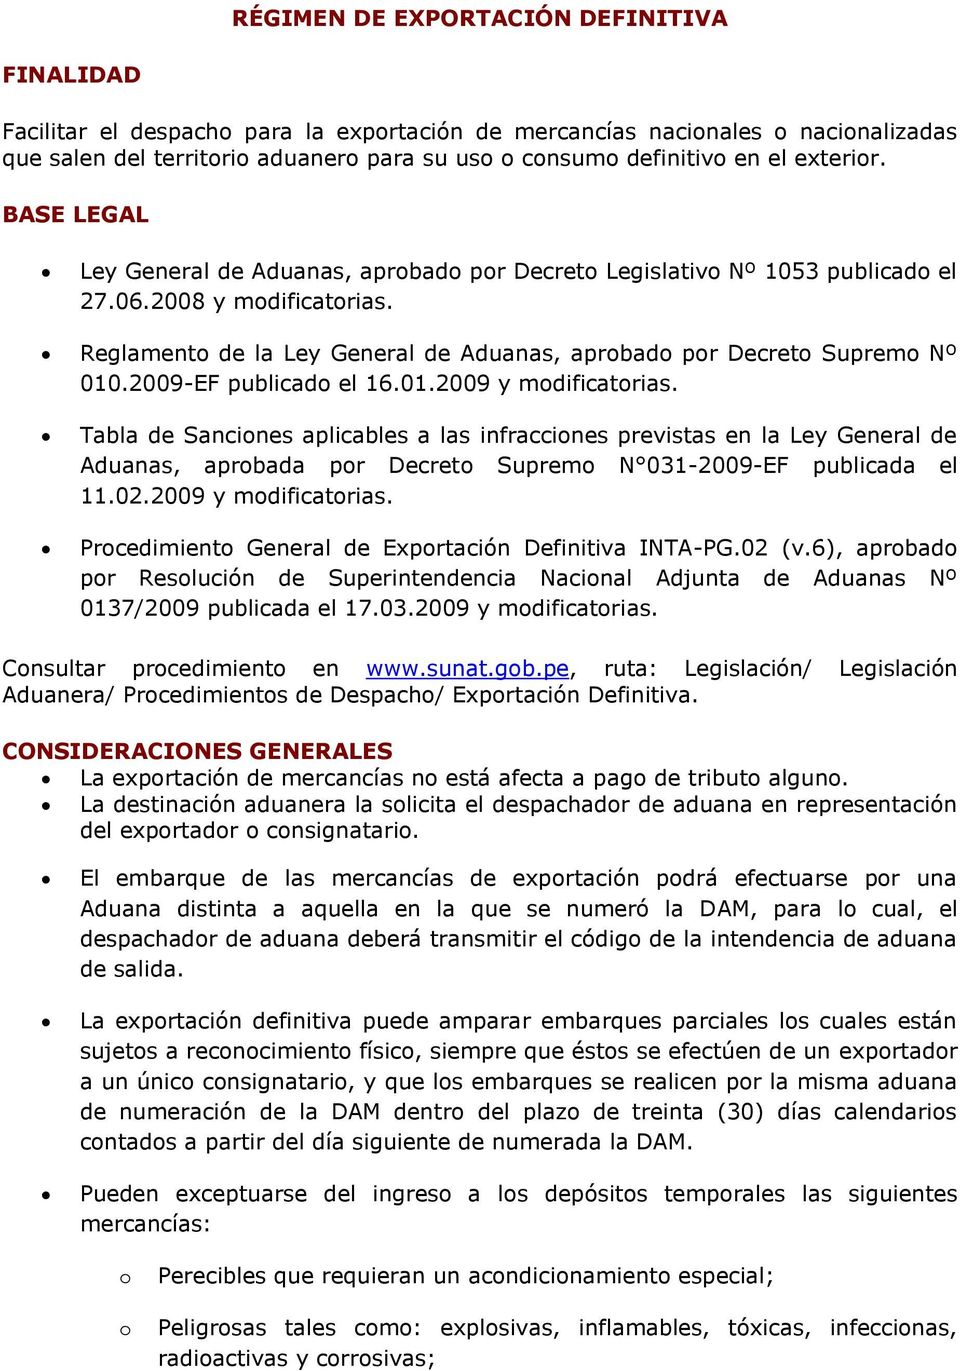 2009-EF publicad el 16.01.2009 y mdificatrias. Tabla de Sancines aplicables a las infraccines previstas en la Ley General de Aduanas, aprbada pr Decret Suprem N 031-2009-EF publicada el 11.02.